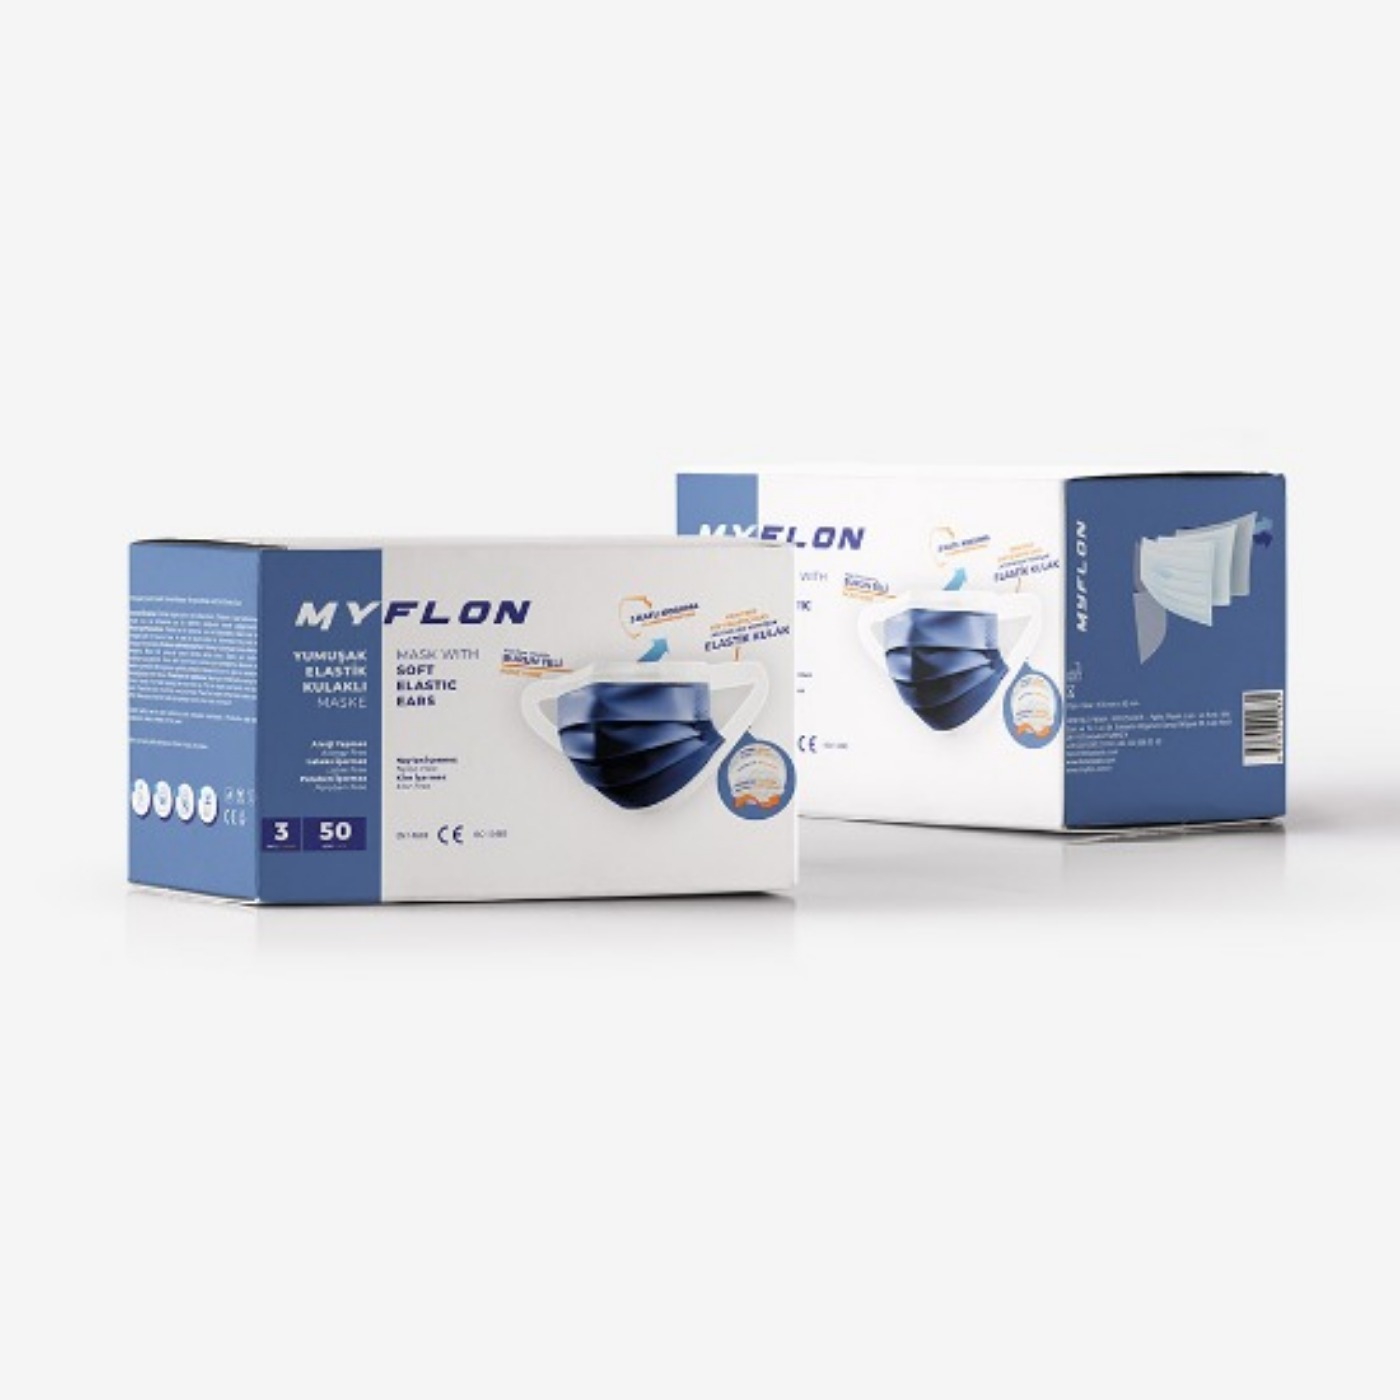 Mavi Elastik Kulaklı Cerrahi Maske 5000 Adet